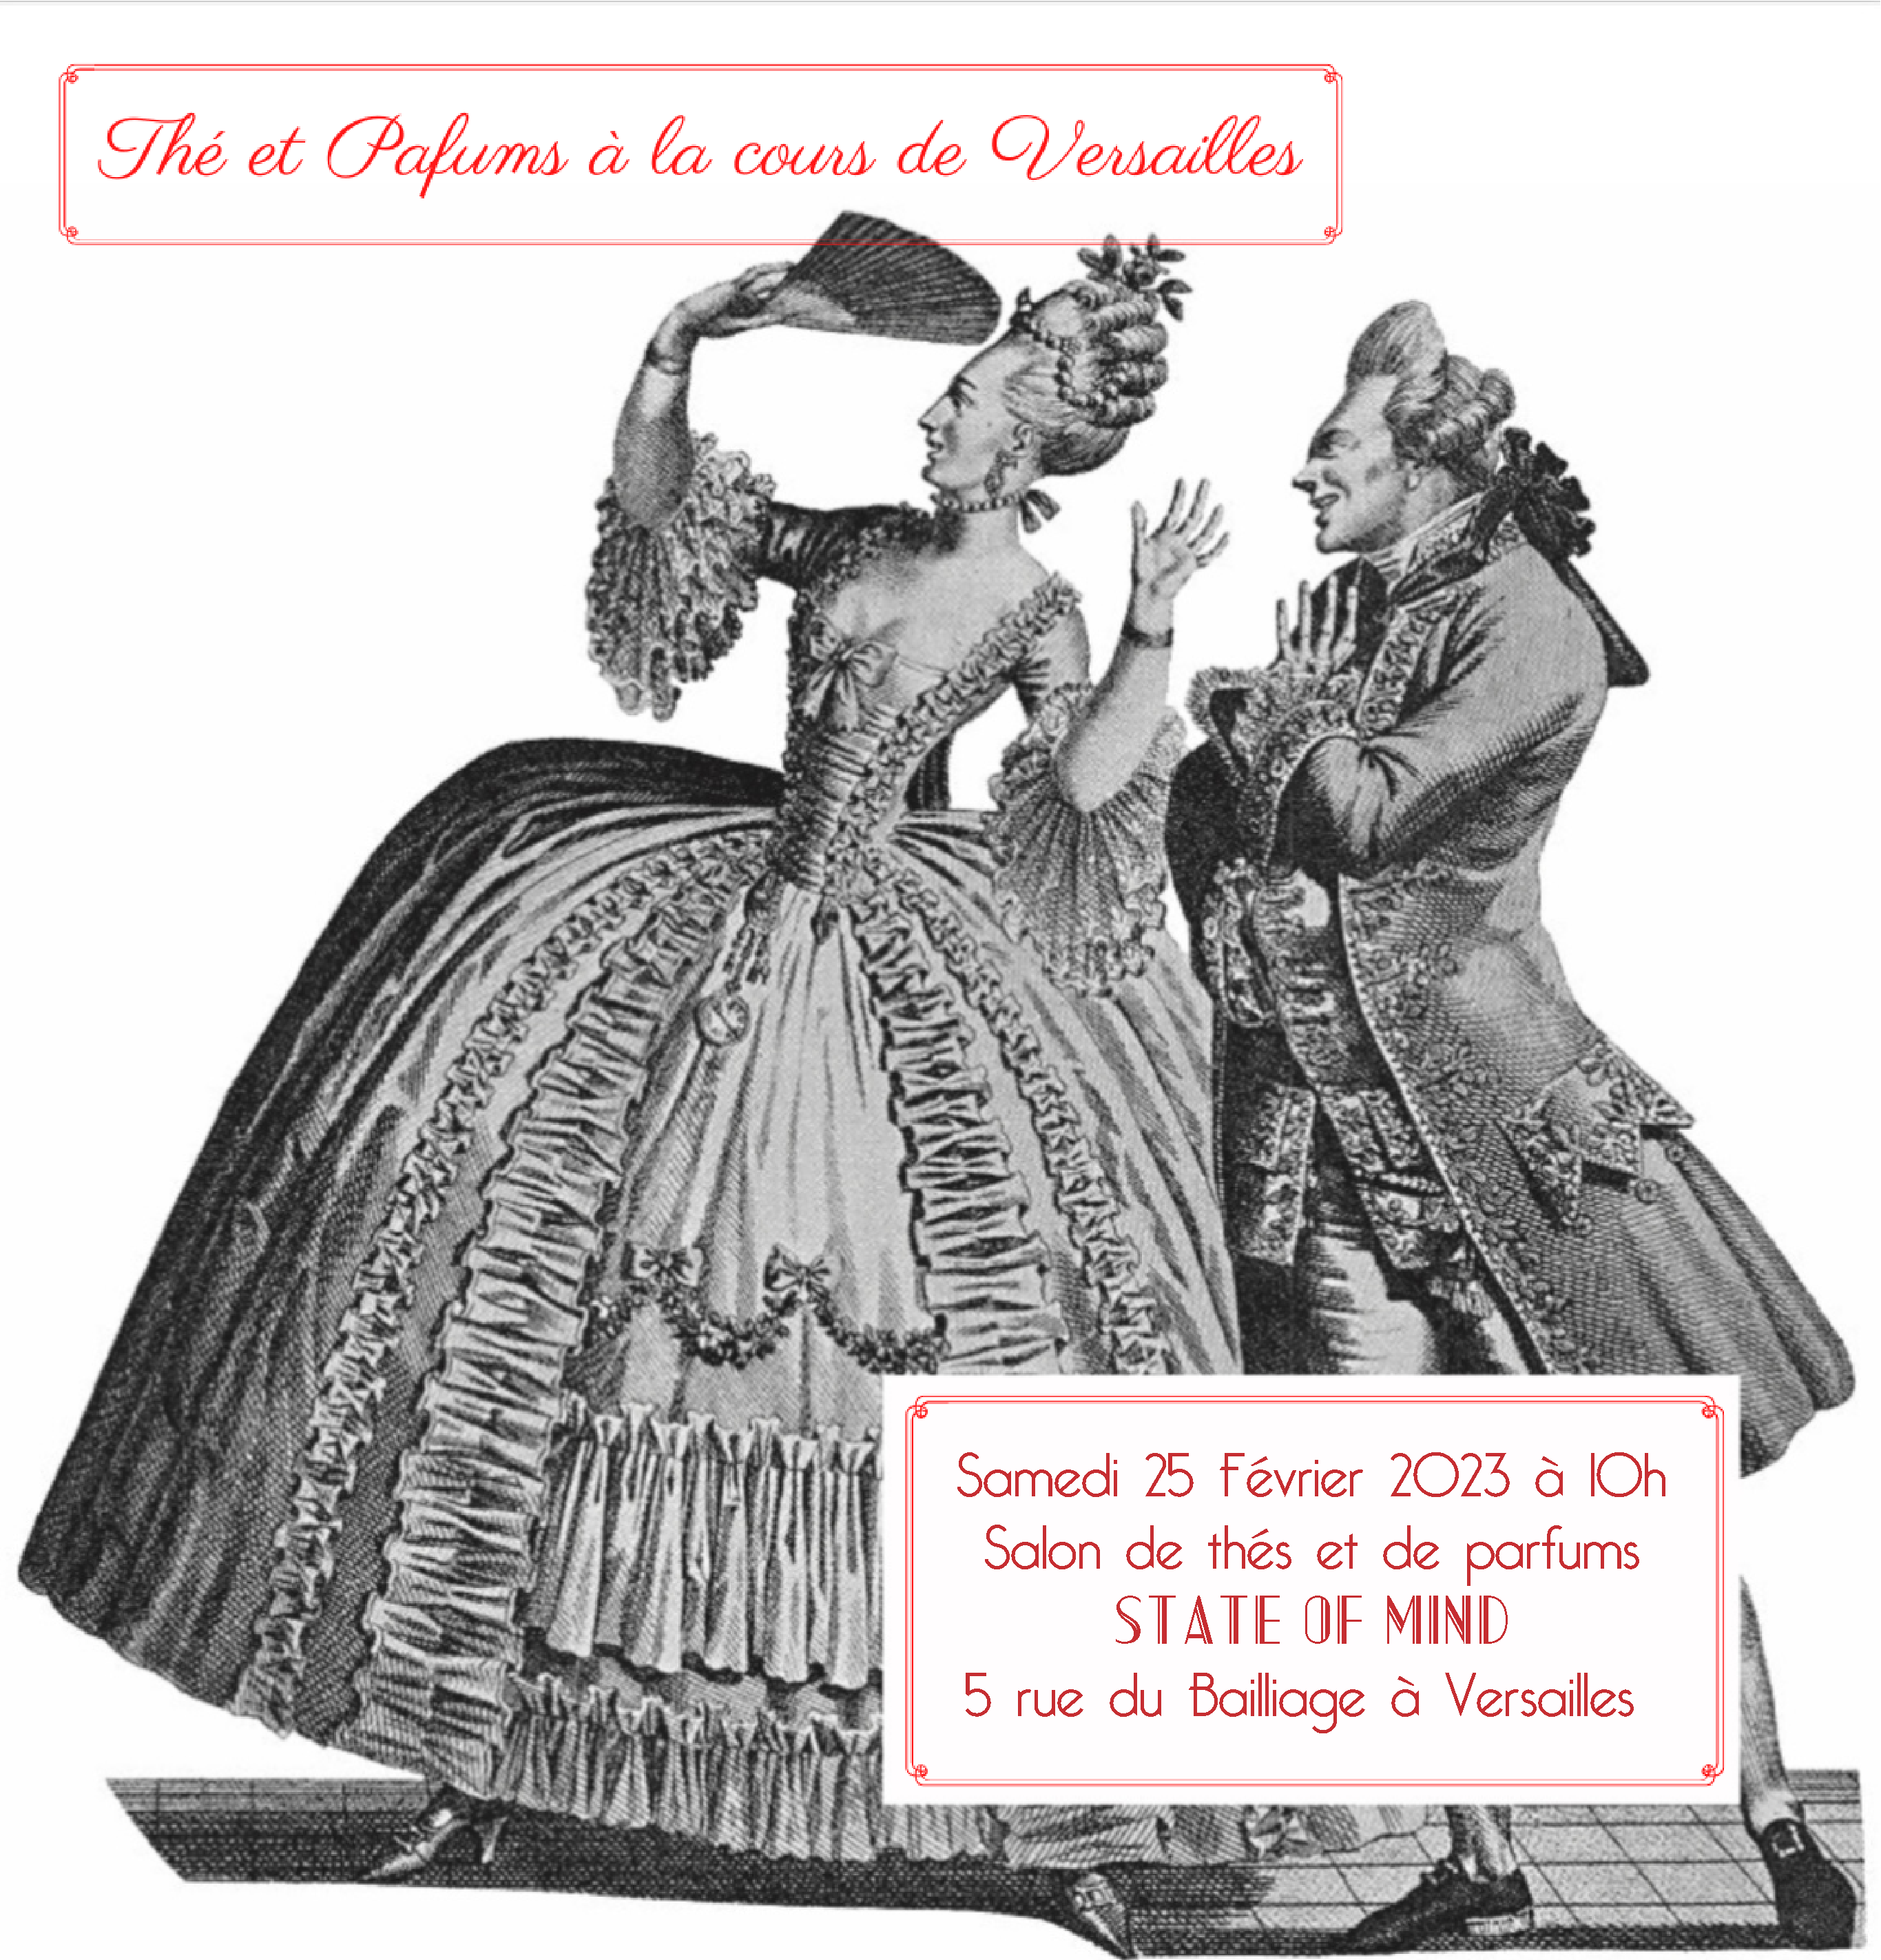 Cérémonie de Thé et Parfums à la cour de Versailles